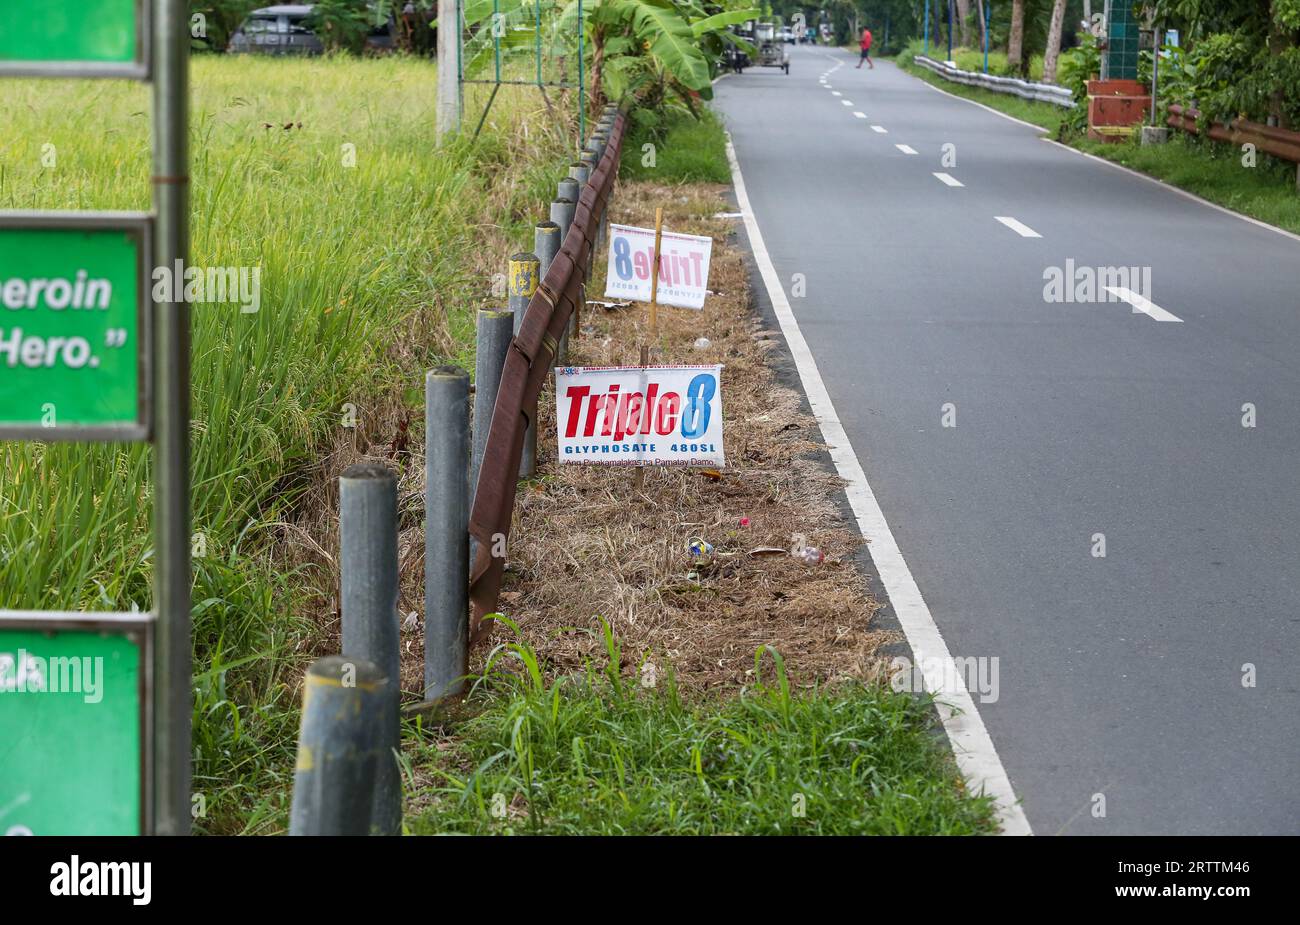 Panneau publicitaire pour l'herbicide glyphosate Triple 8 480SL (Tag Chem) utilisé dans les rizières voisines, démarcation claire de l'efficacité des désherbants, Philippines Banque D'Images